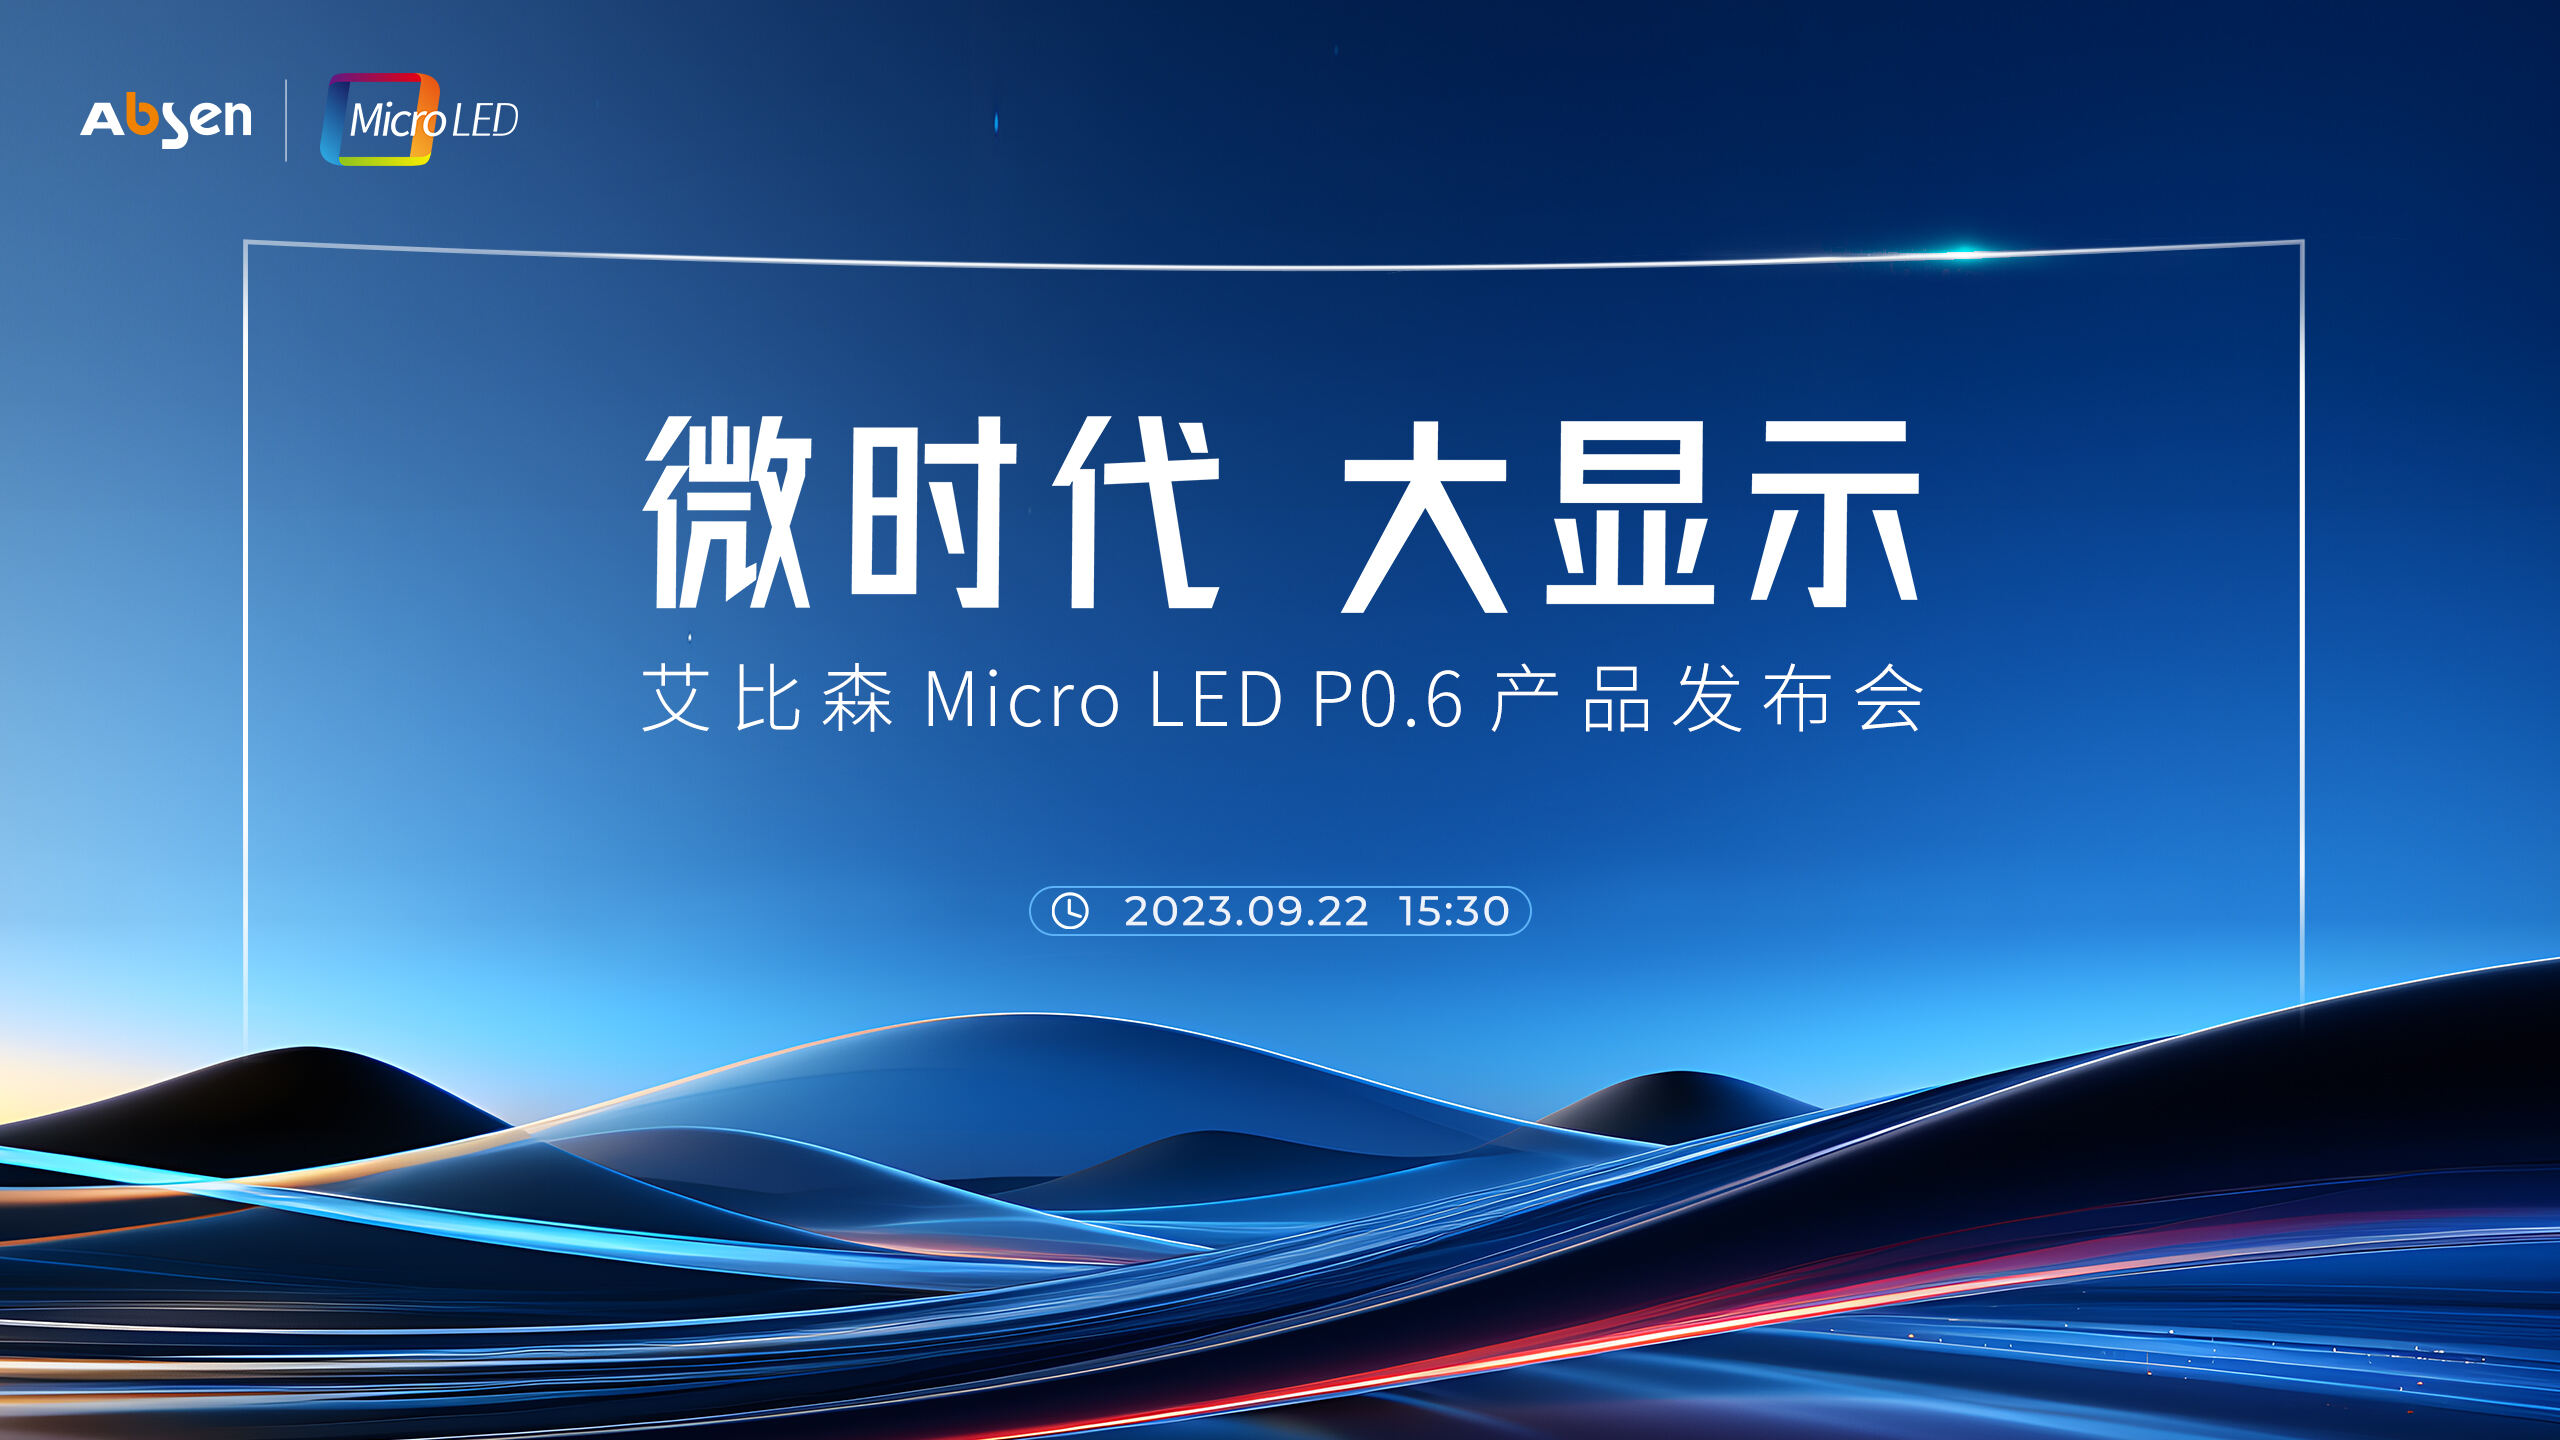 微时代 大杏彩体育
丨杏彩体育
 Micro LED P0.6 产品重磅发布